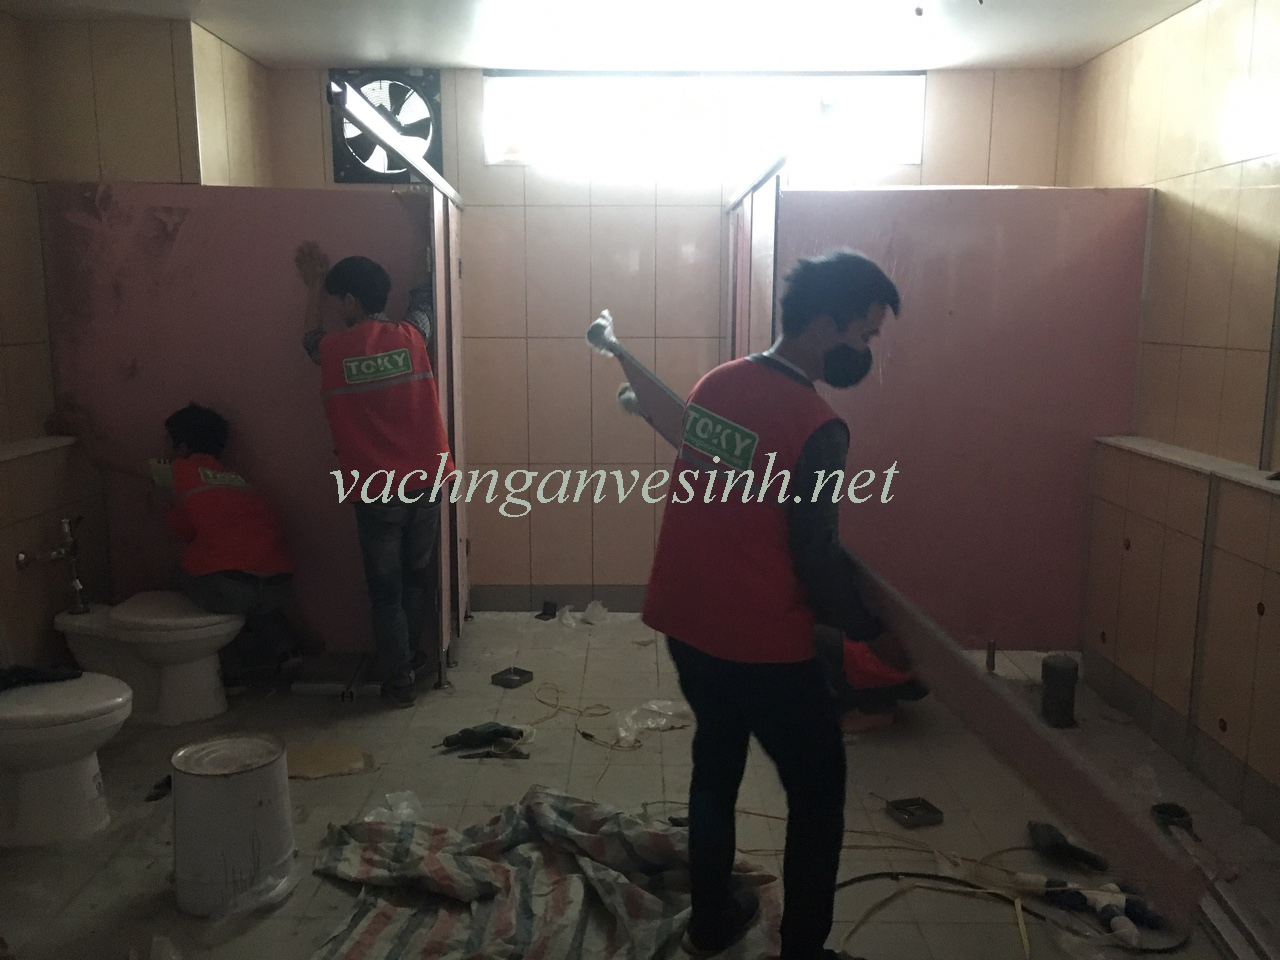 Toky thi công công trình vách ngăn vệ sinh compact tại Toyoda Thái Bình